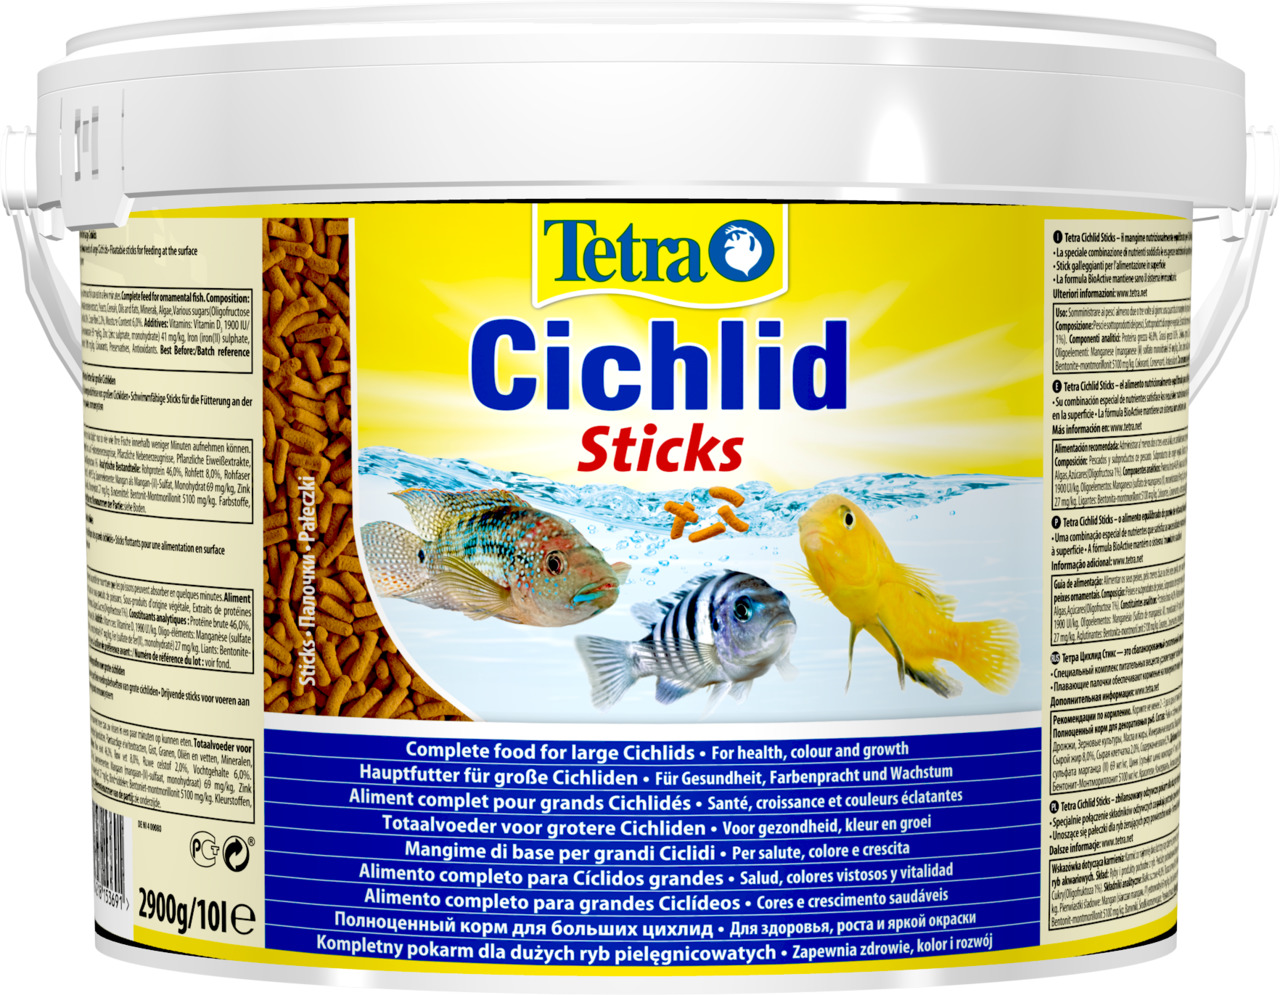 Tetra Cichlid Sticks Aquarium Futtersticks 10 l